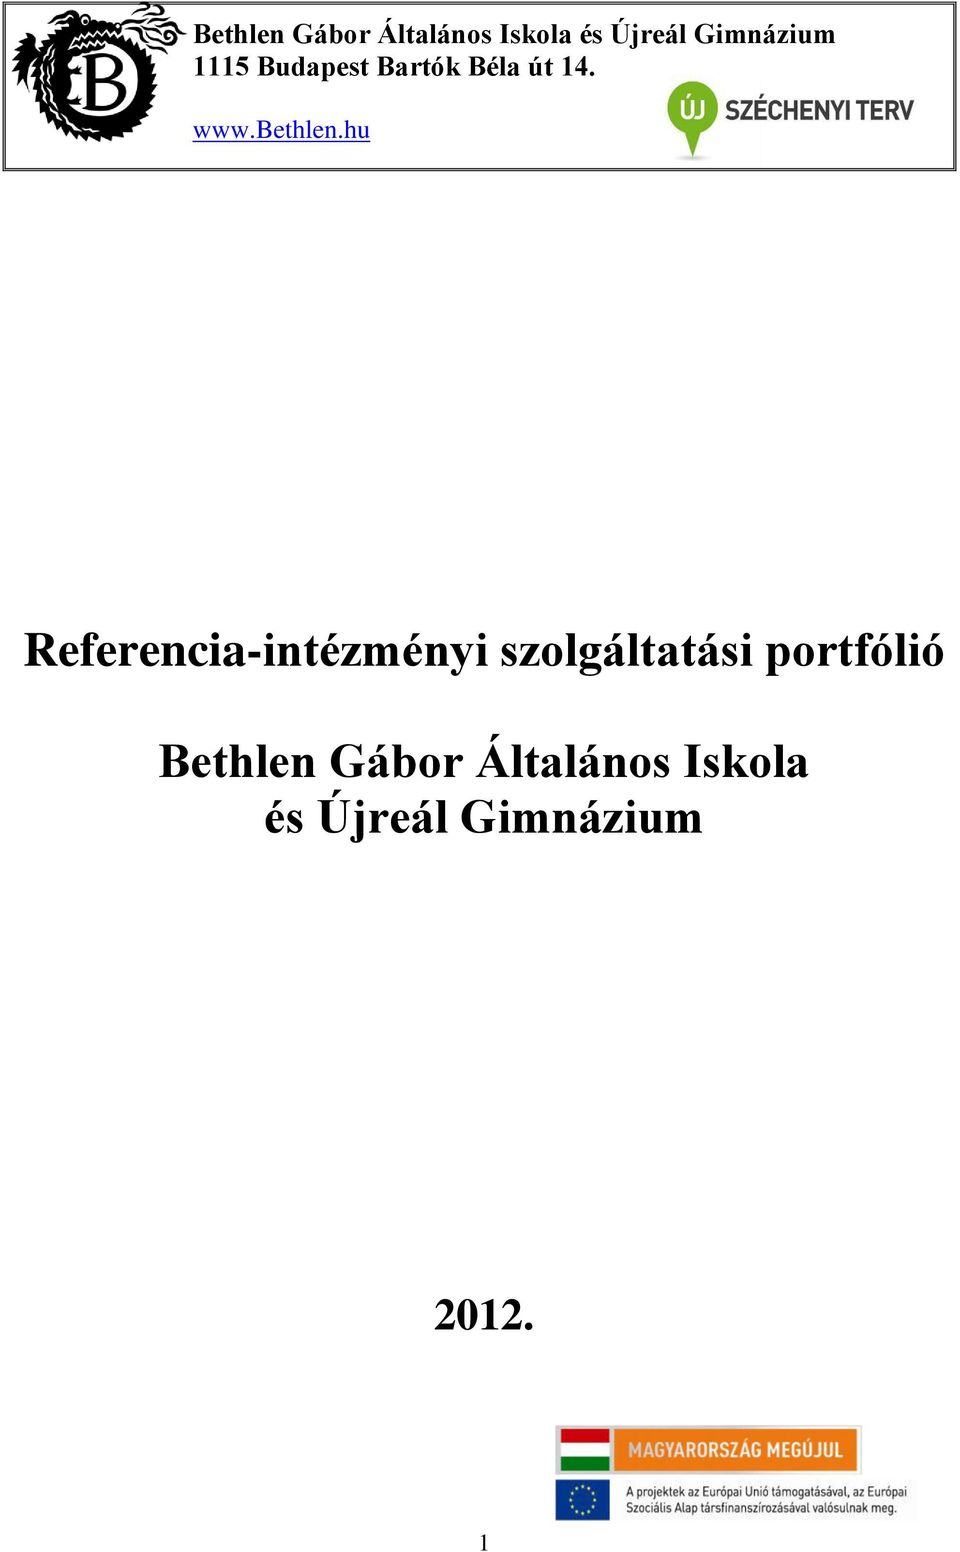 Bethlen Gábor Általános